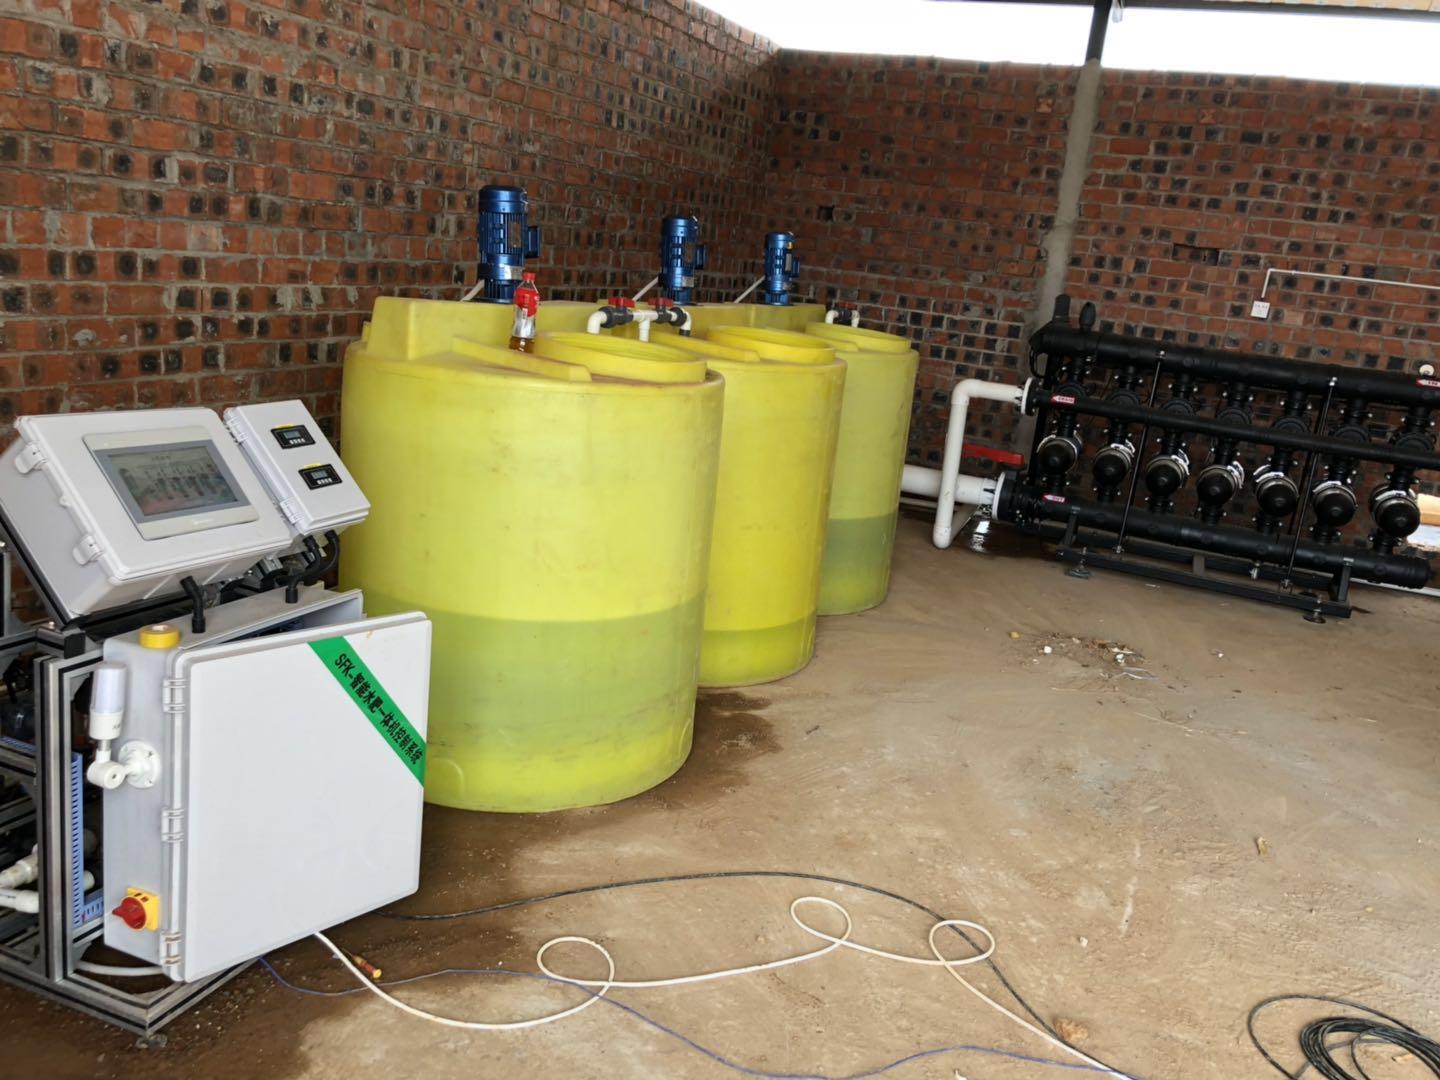 智能施肥机 全自动水肥一体化灌溉设备全自动施肥机灌溉设备